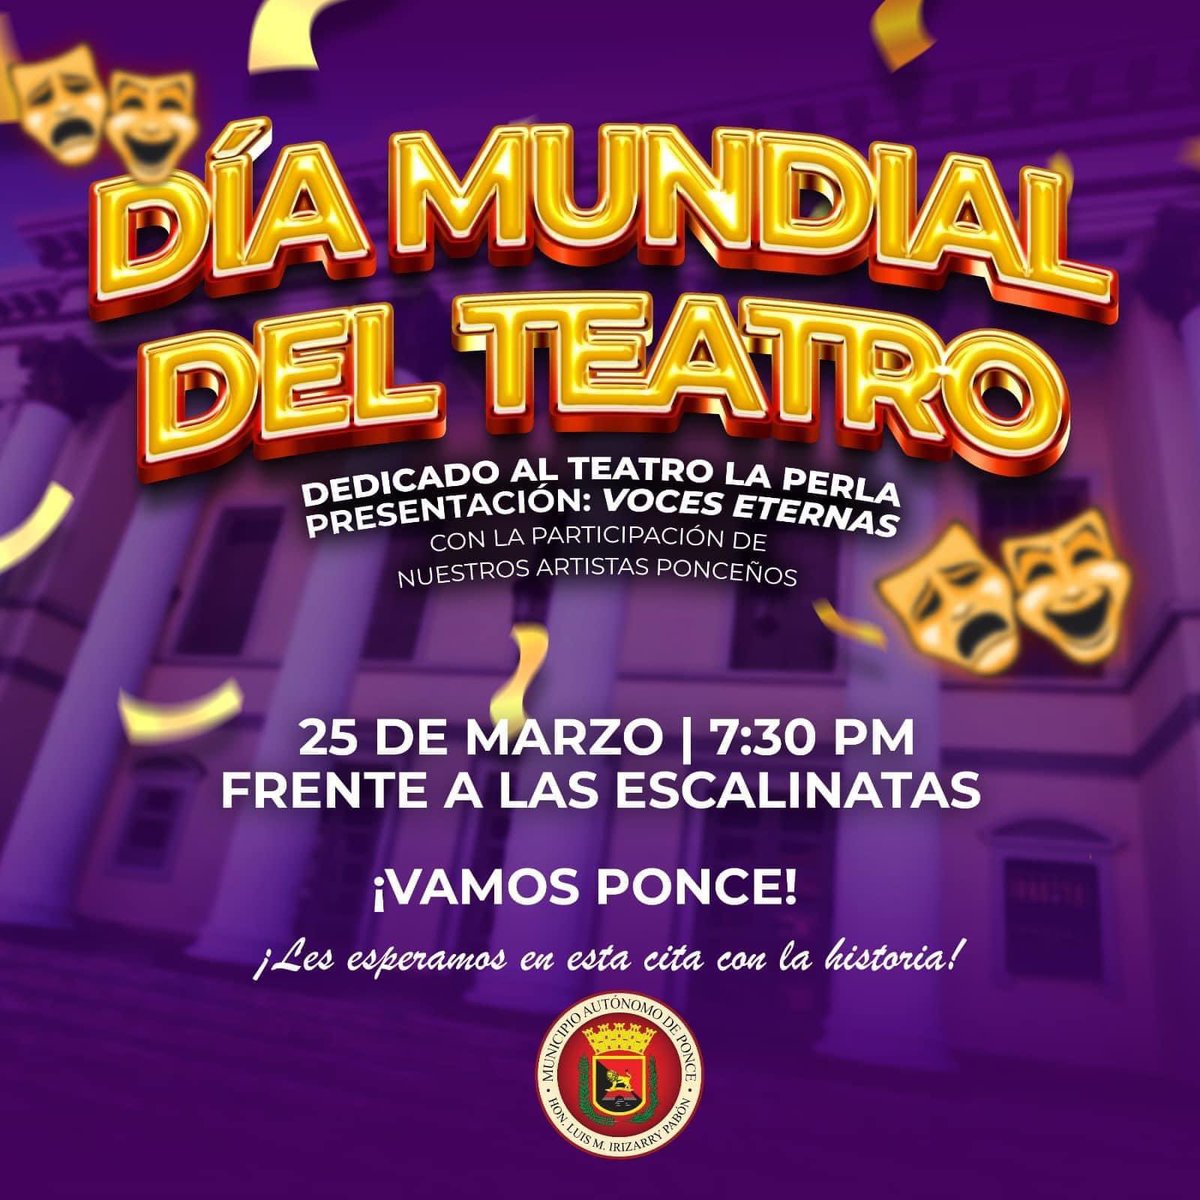 El Municipio Autónomo de Ponce les invita a el Día Mundial del Teatro 🎭 🗓️25/ Marzo/2023 ⏰7:30pm 📍Escalinatas Teatro La Perla #VisitPonce